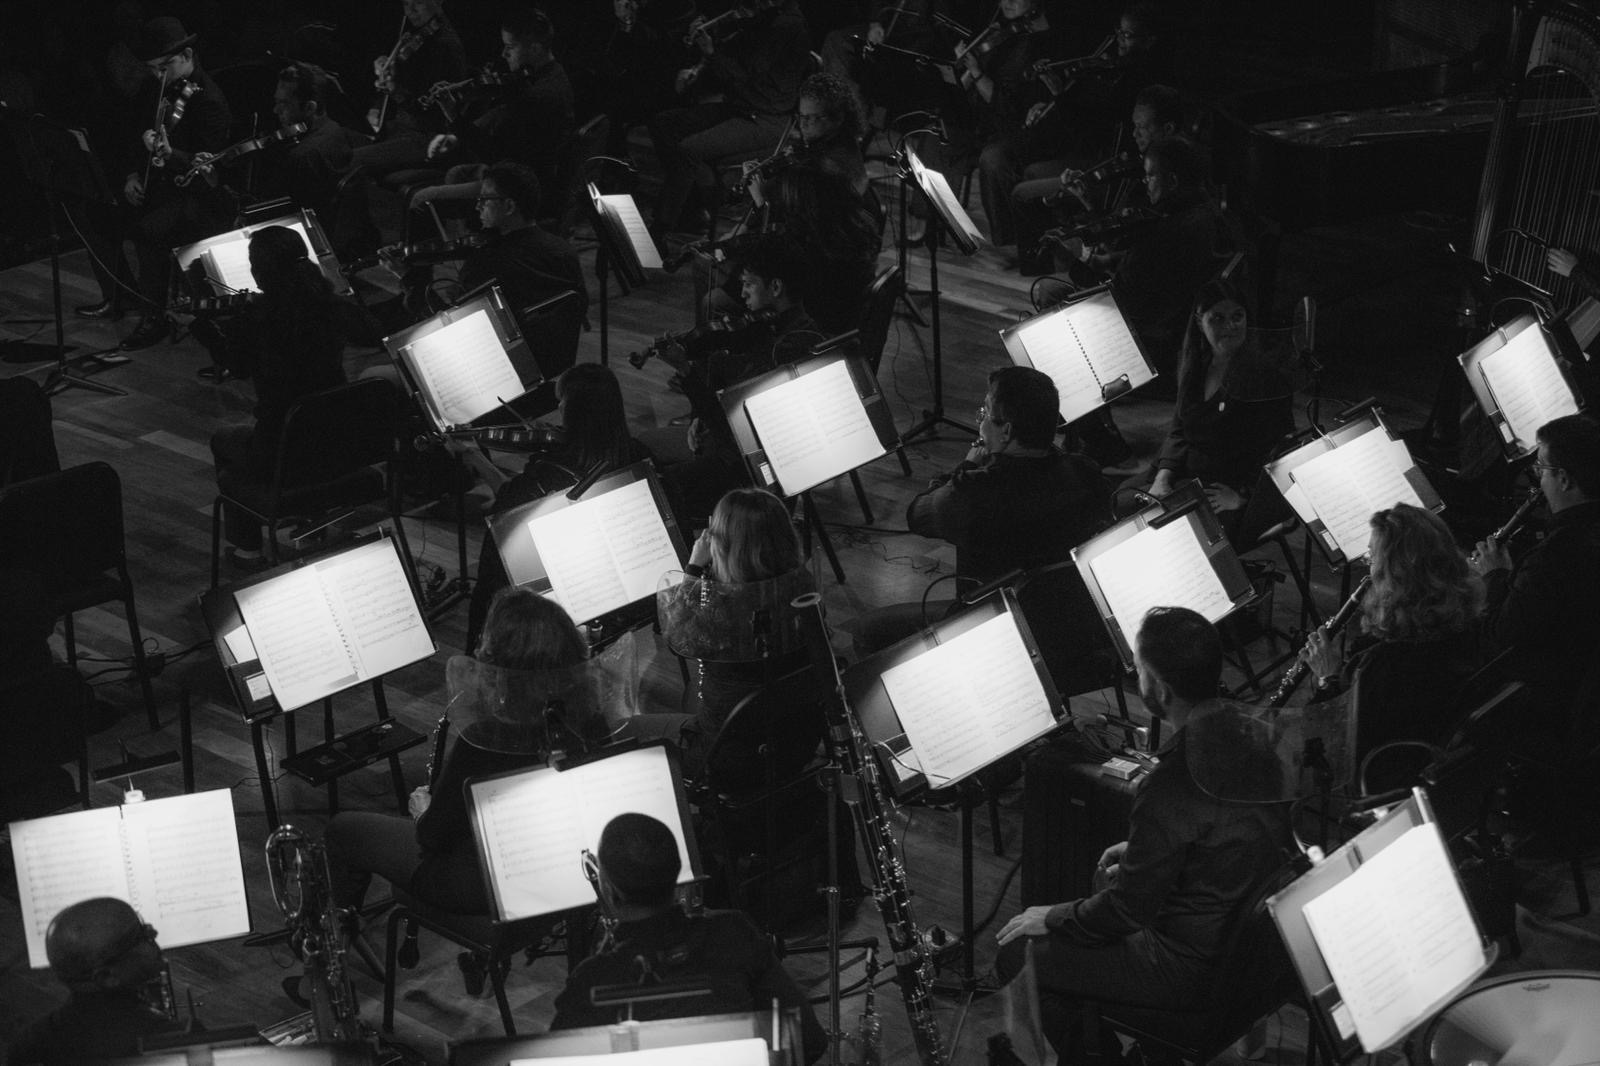 La OSPR le da la bienvenida a su nueva temporada con un concierto inaugural gratuito